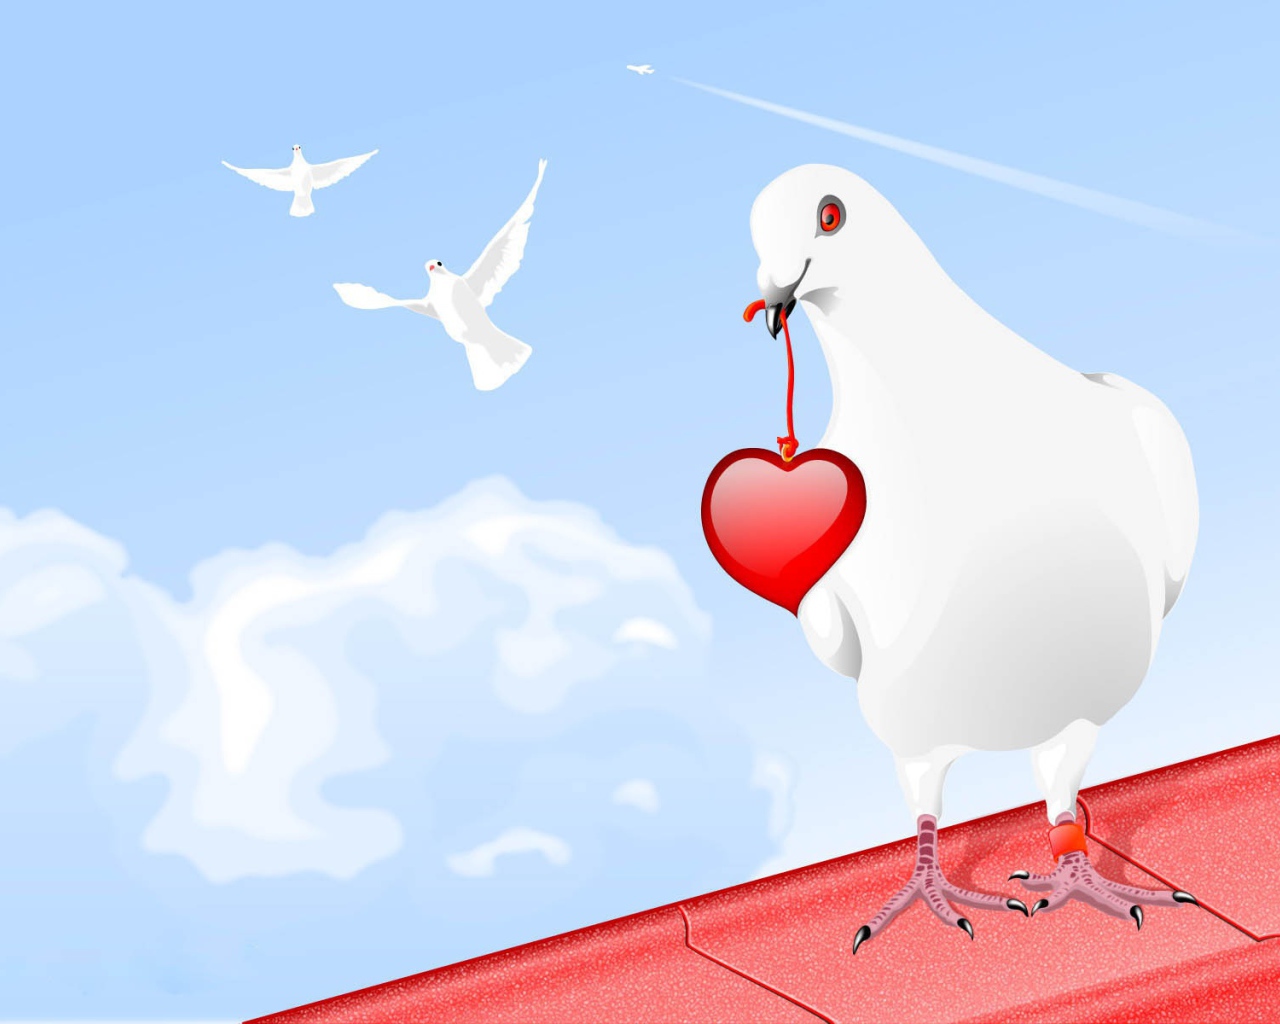 Голубь с сердцем на День Влюбленных 14 февраля